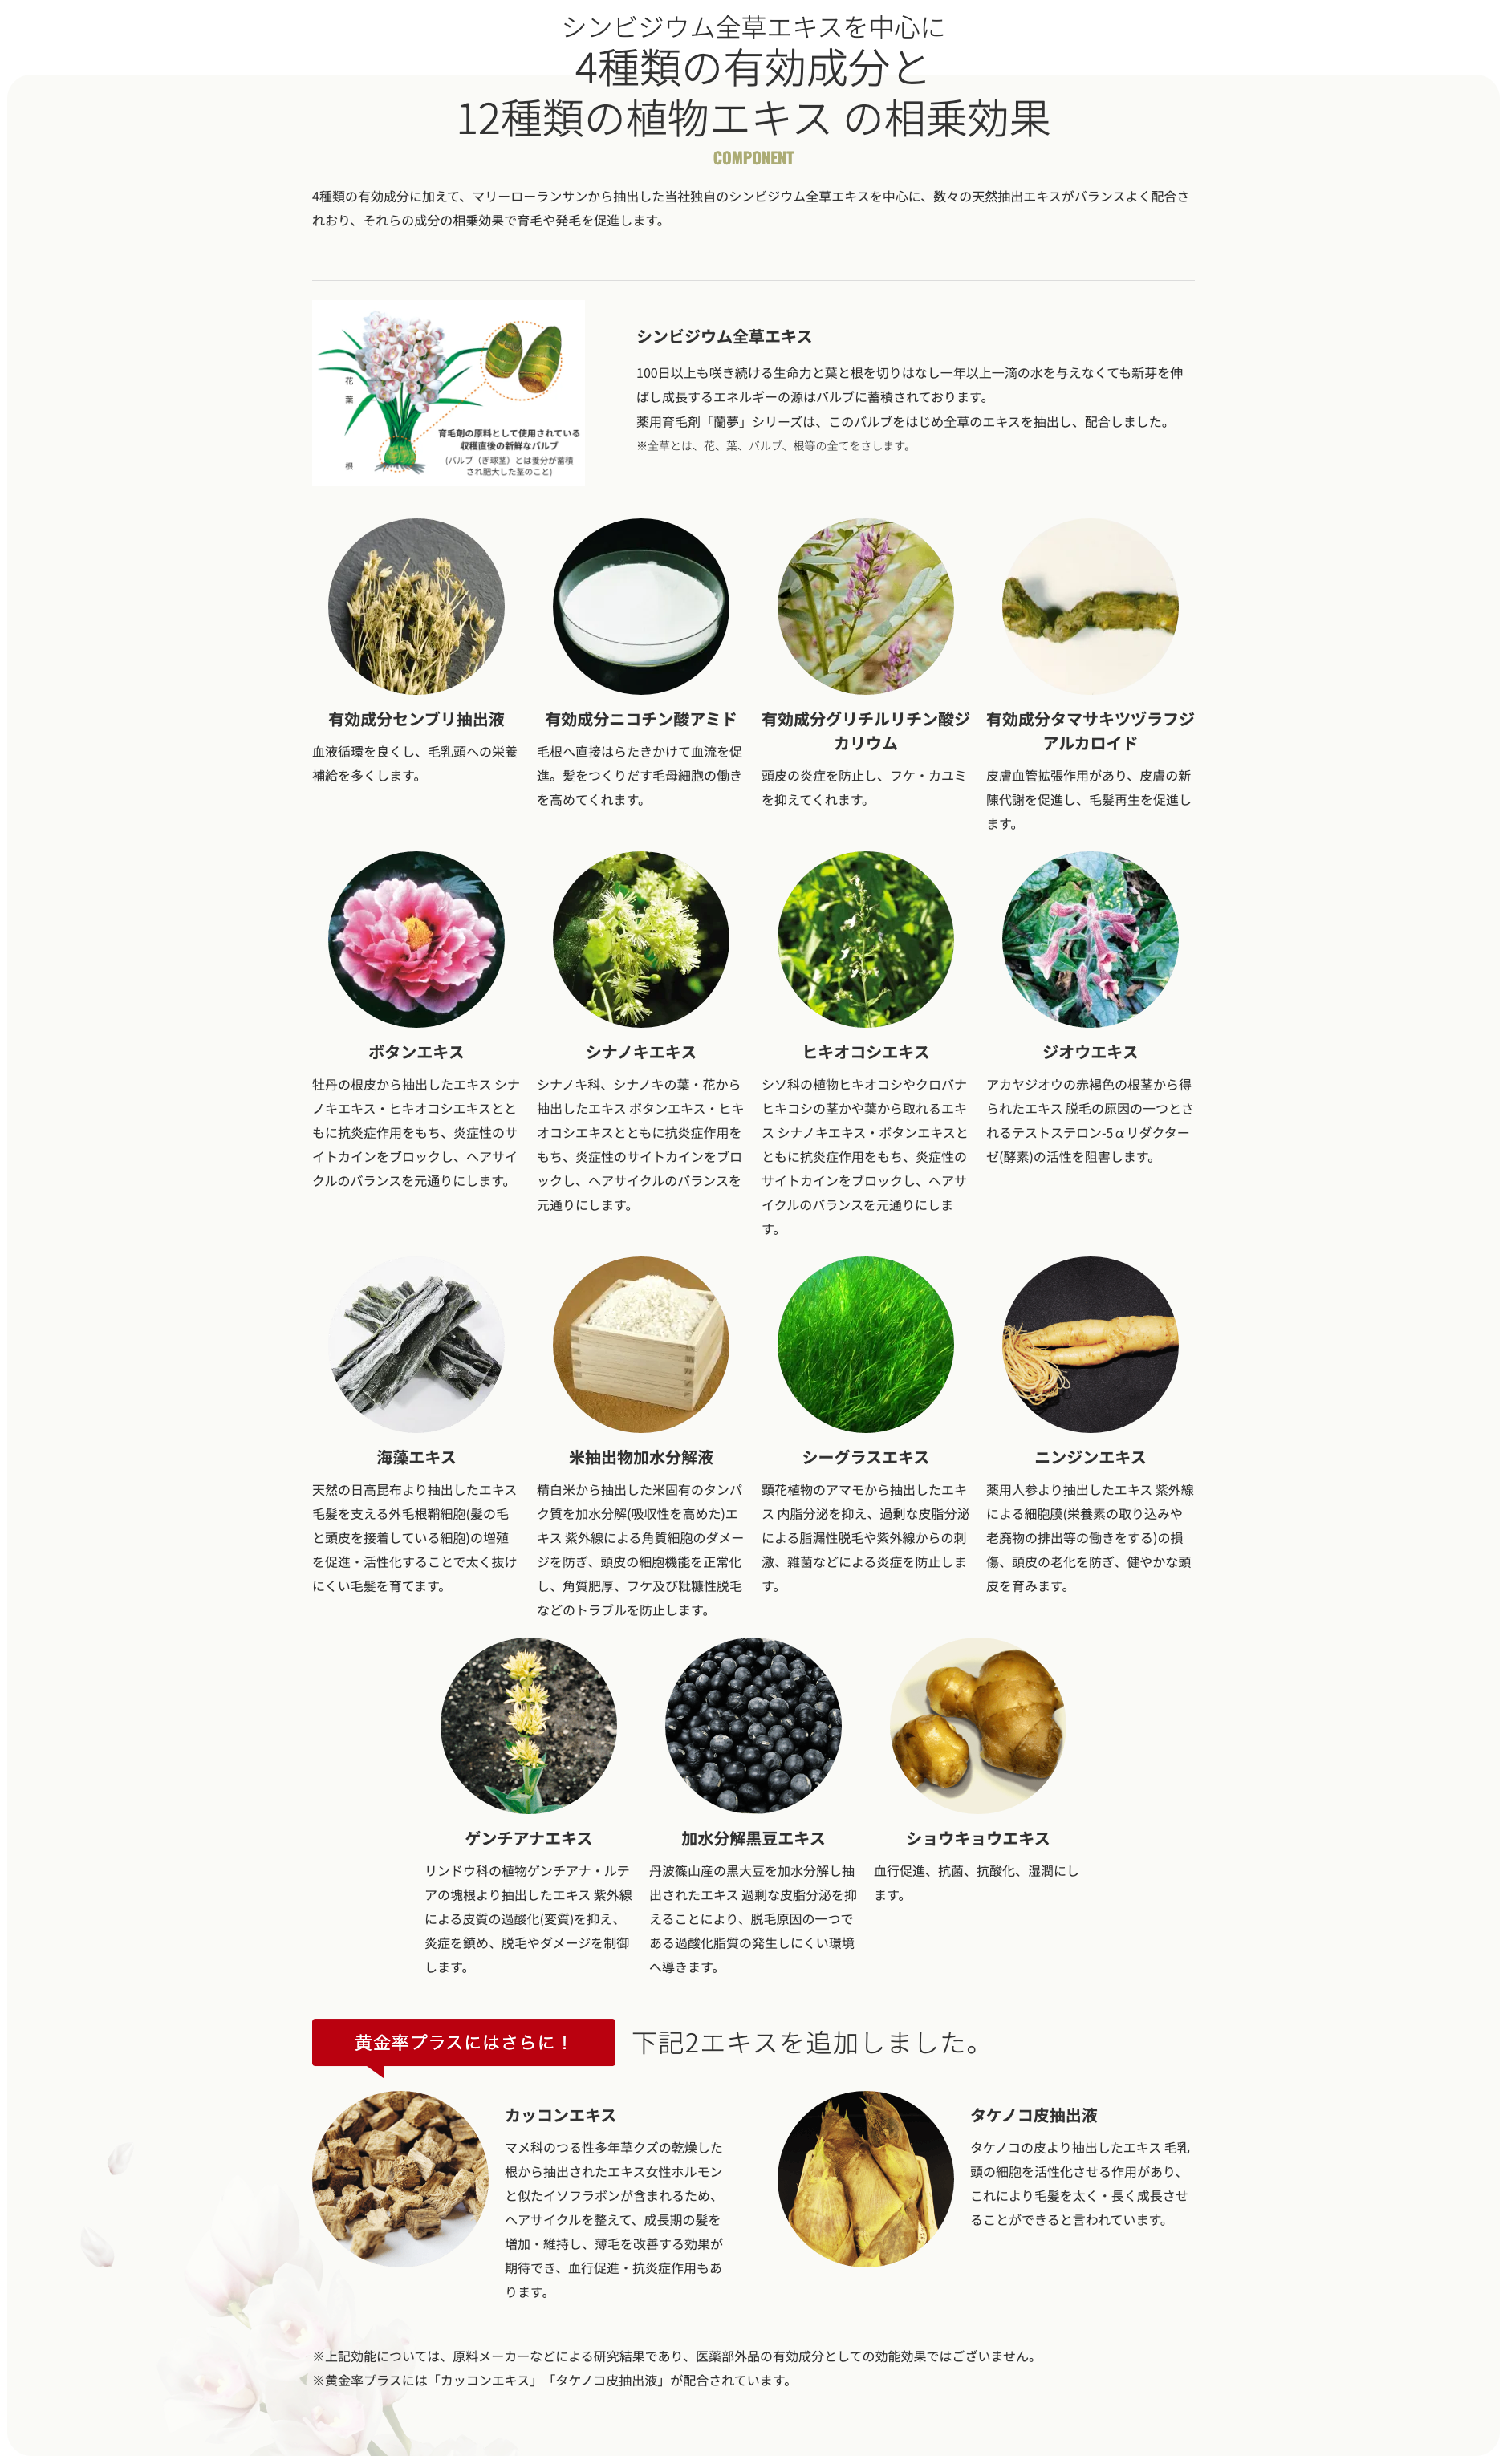 シンビジウム全草エキスを中心に4種類の有効成分と12種類の植物エキスの相乗効果